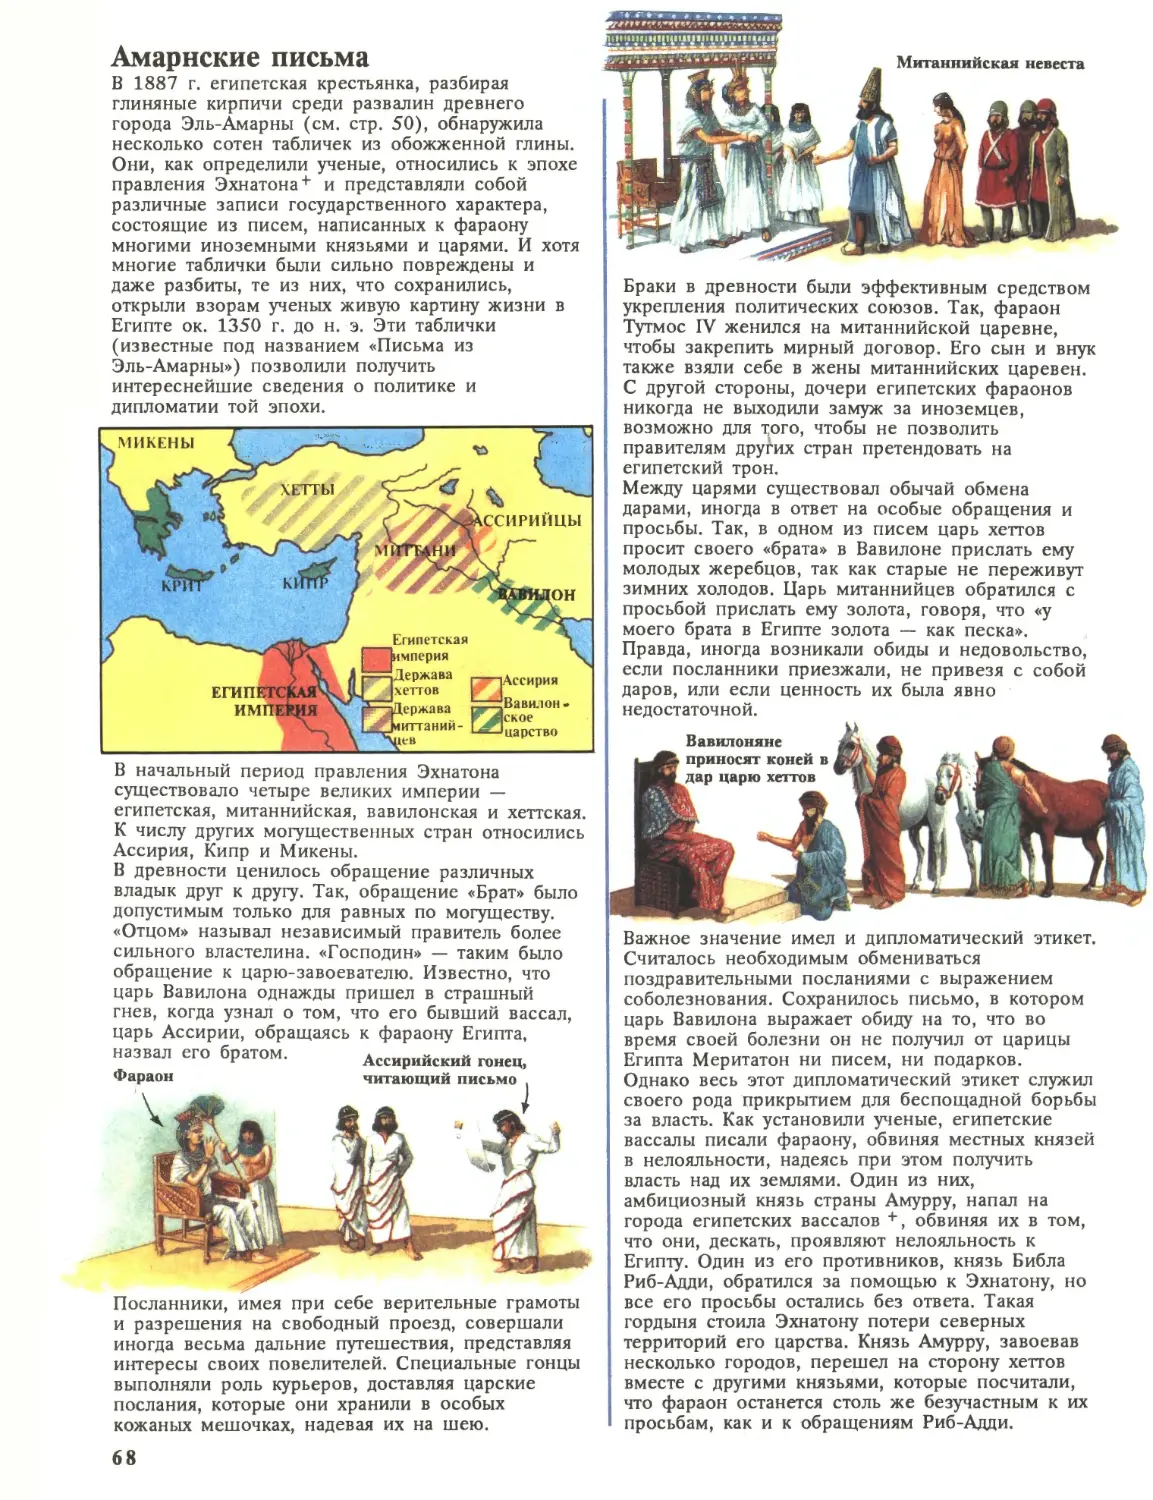 Амарнские письма. Рамсес Великий и XIX династия